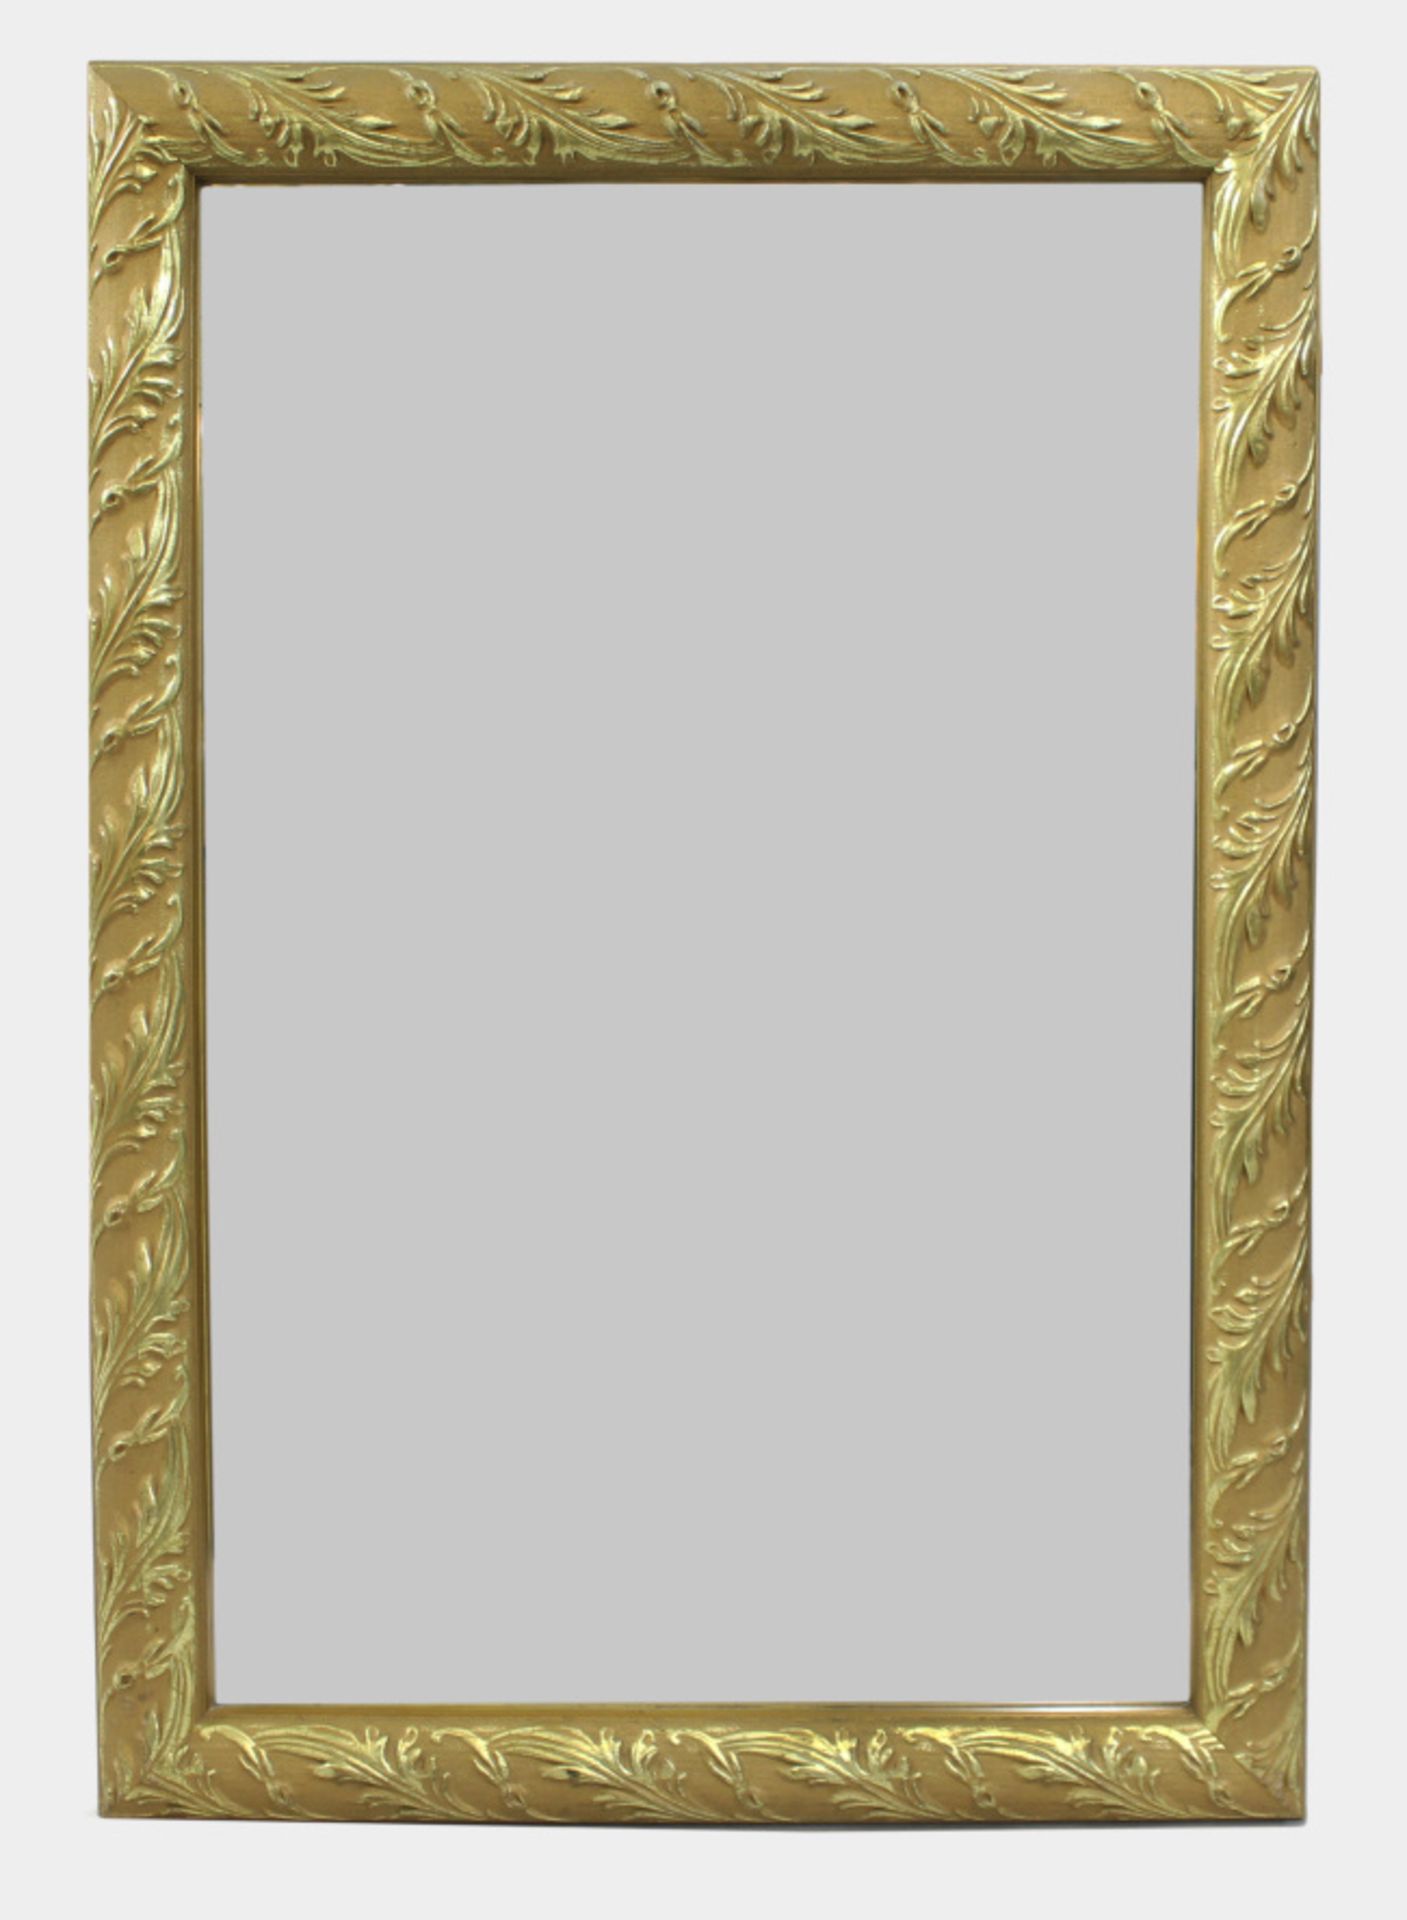 Gilt Leaf Framed Bevelled Glass Wall Mirror 52 x 75 cm